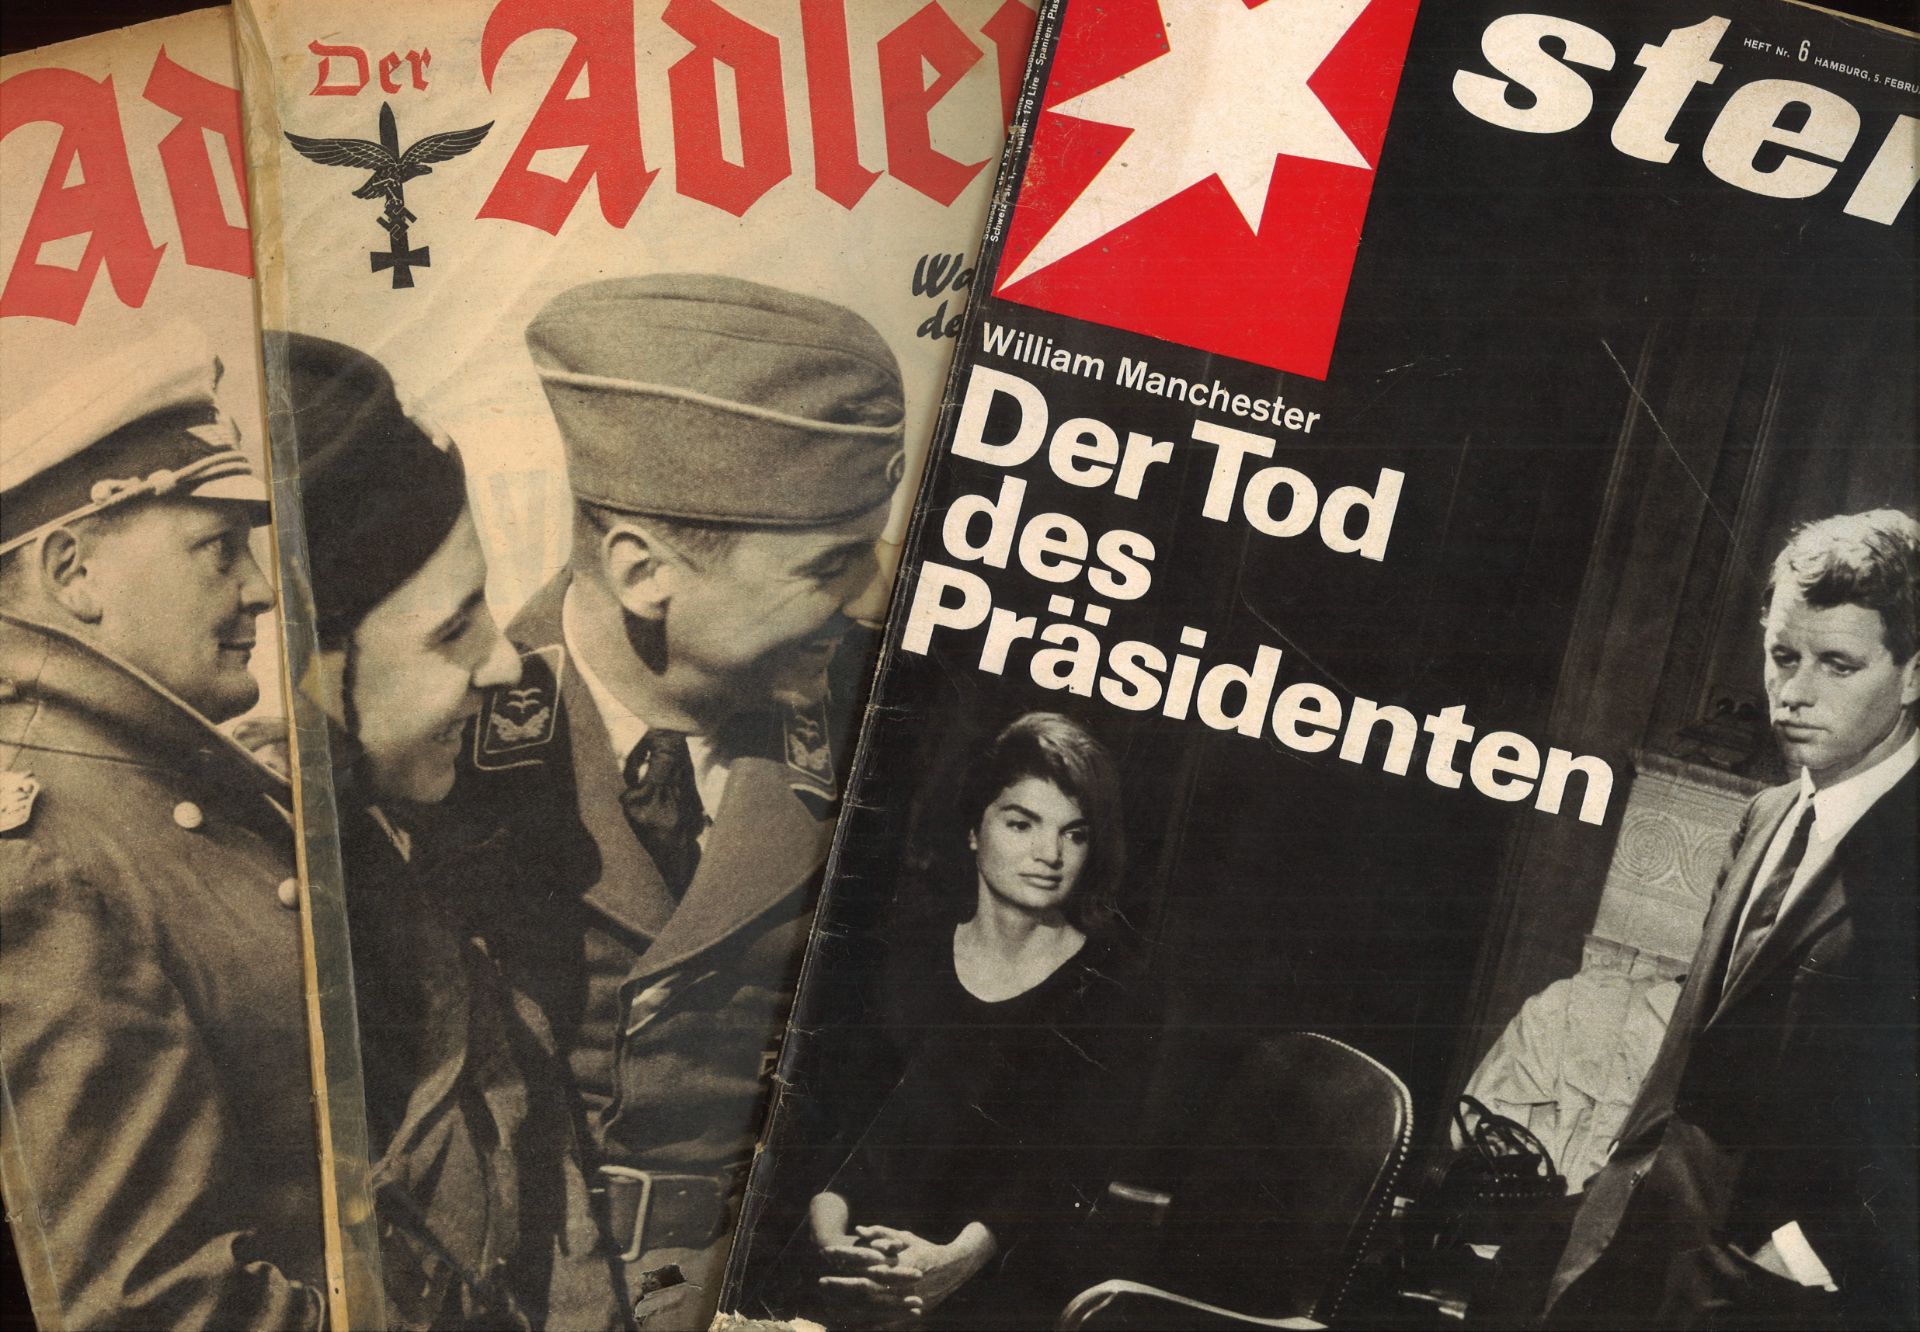 Der Adler Heft 4 / Berlin 18. Februar 1941 und Heft 5 / Berlin 4. März 1941, sowie der Stern Heft